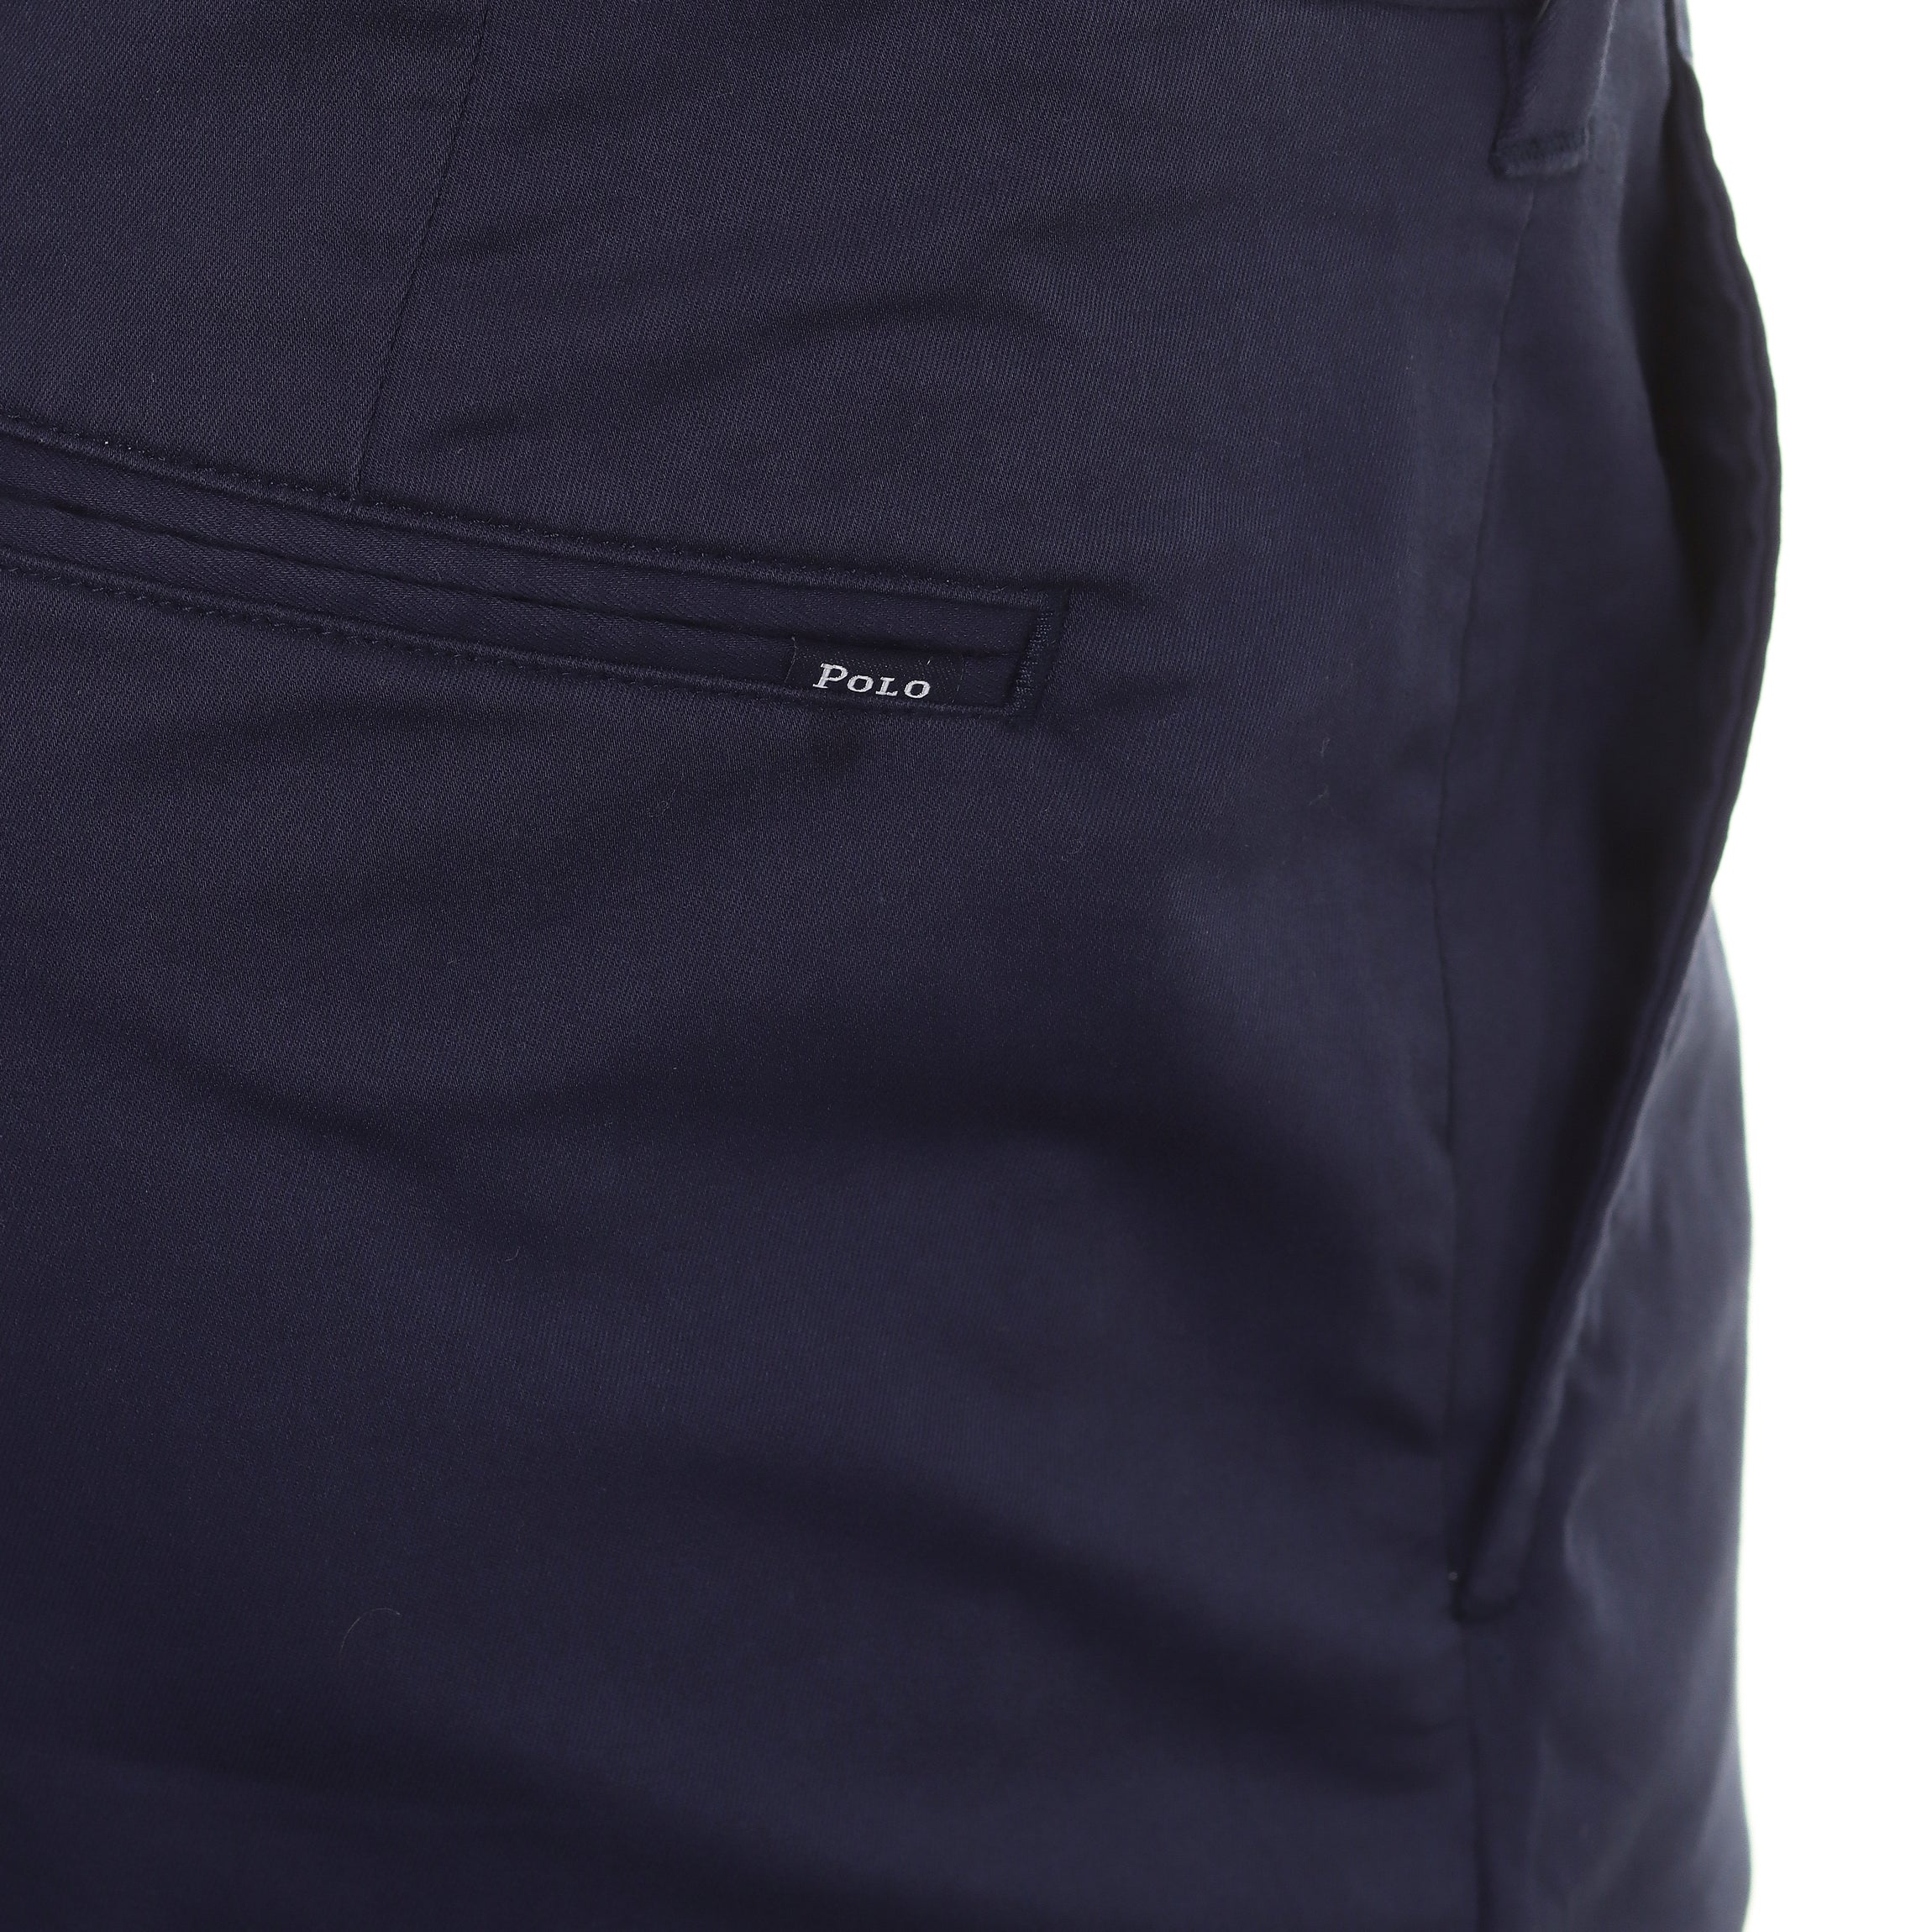 Polo Golf Ralph Lauren Cotton Slim Fit Trousers 710880711 Classic Khaki 002, Function18